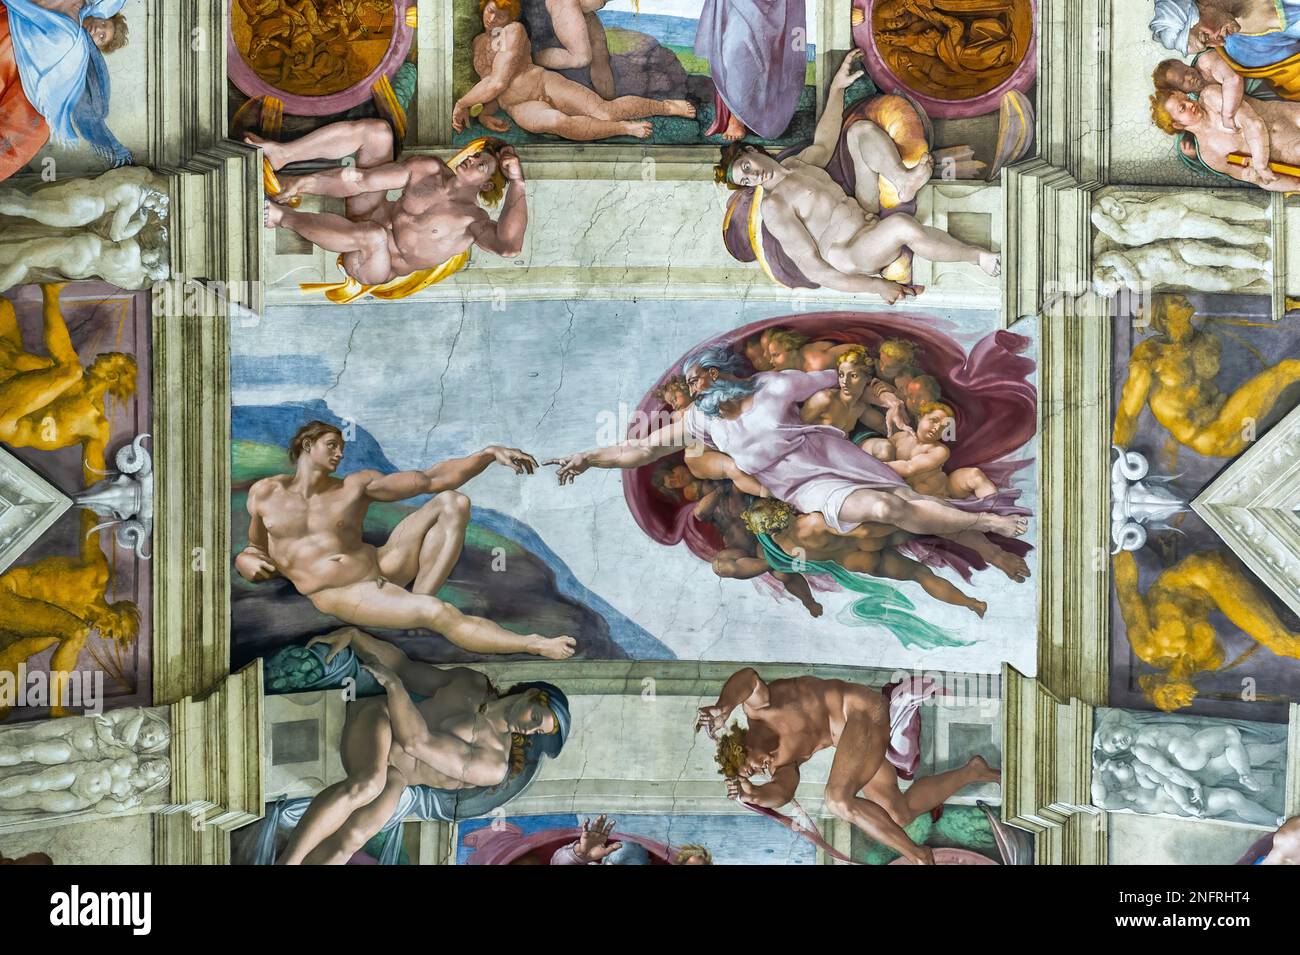 Roma Italia. Cappella Sistina di Michelangelo. La creazione di Adamo. Dicembre 2019 Foto Stock